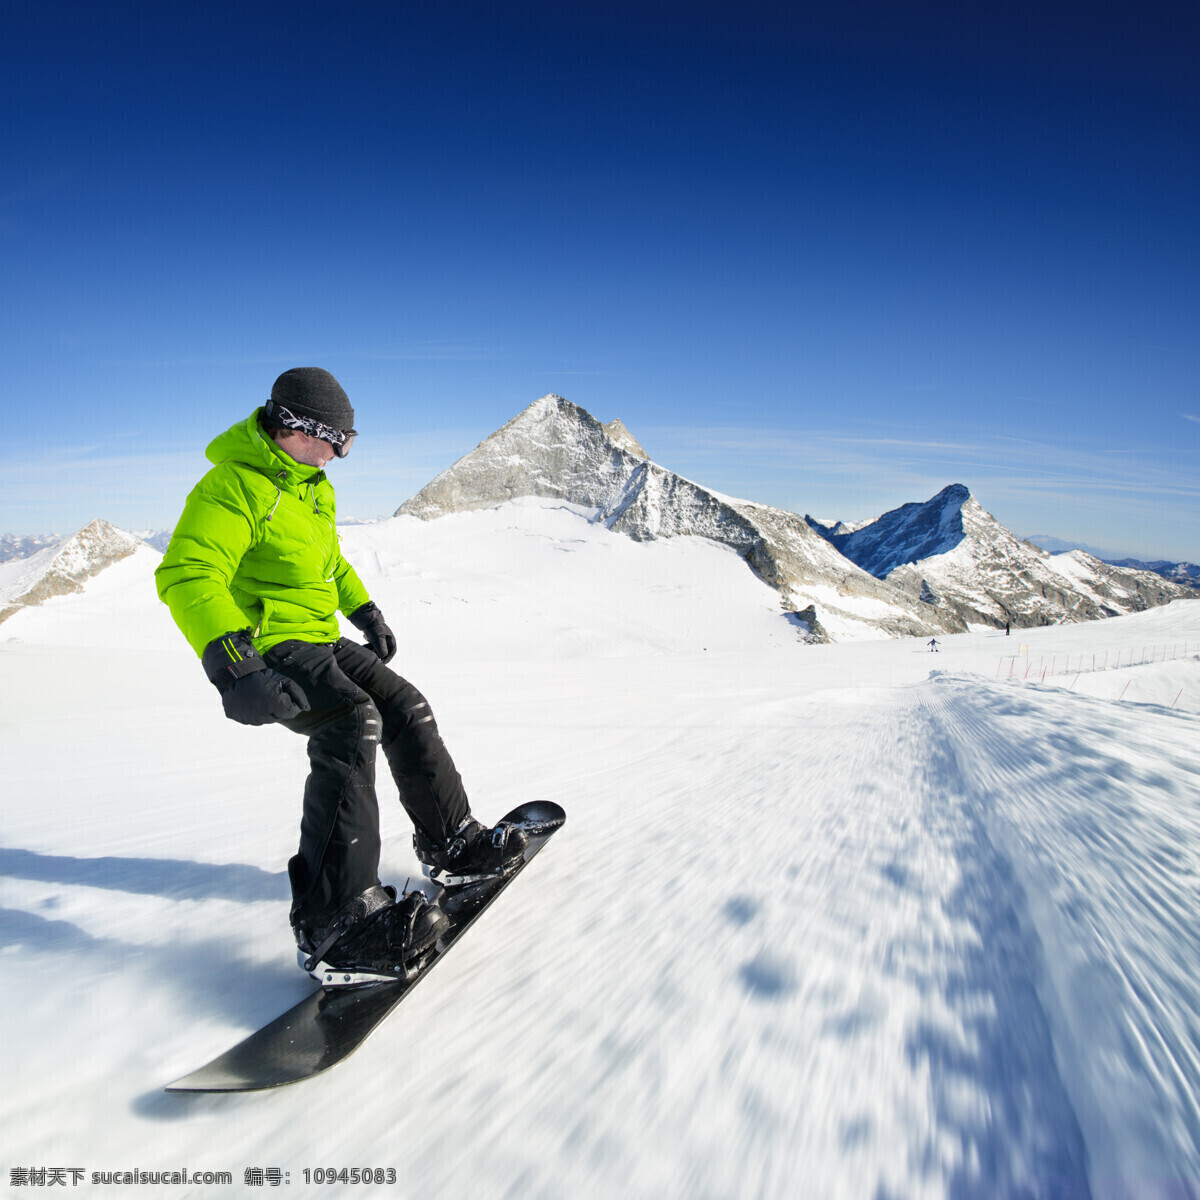 向下 去 滑雪 运动员 快速 高山 雪山 运动 雪地 雪花 滑雪板 户外运动 滑雪图片 生活百科